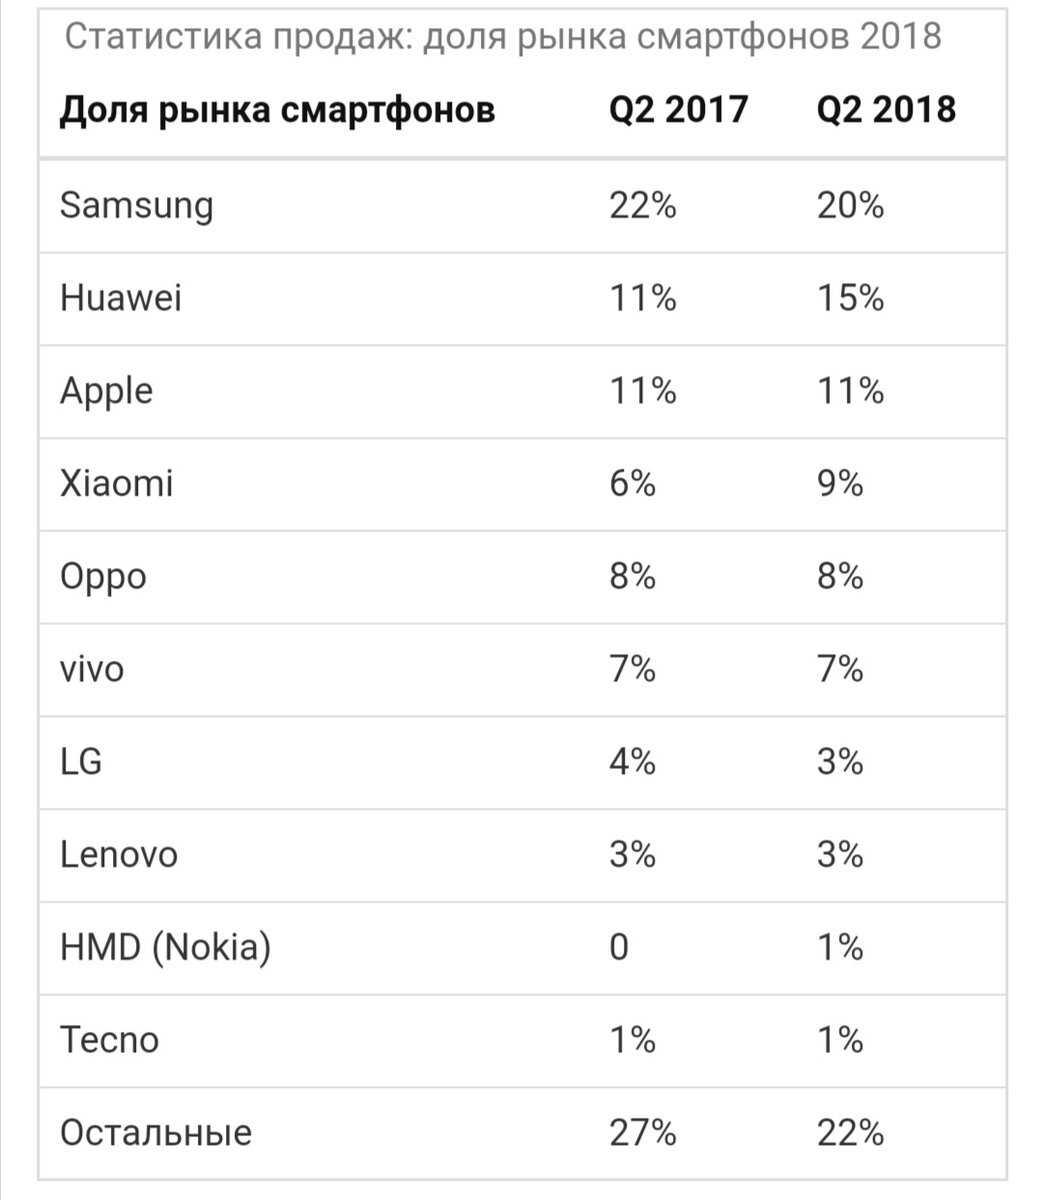 Лучшие смартфоны до 5000 рублей 2018 - топ 5